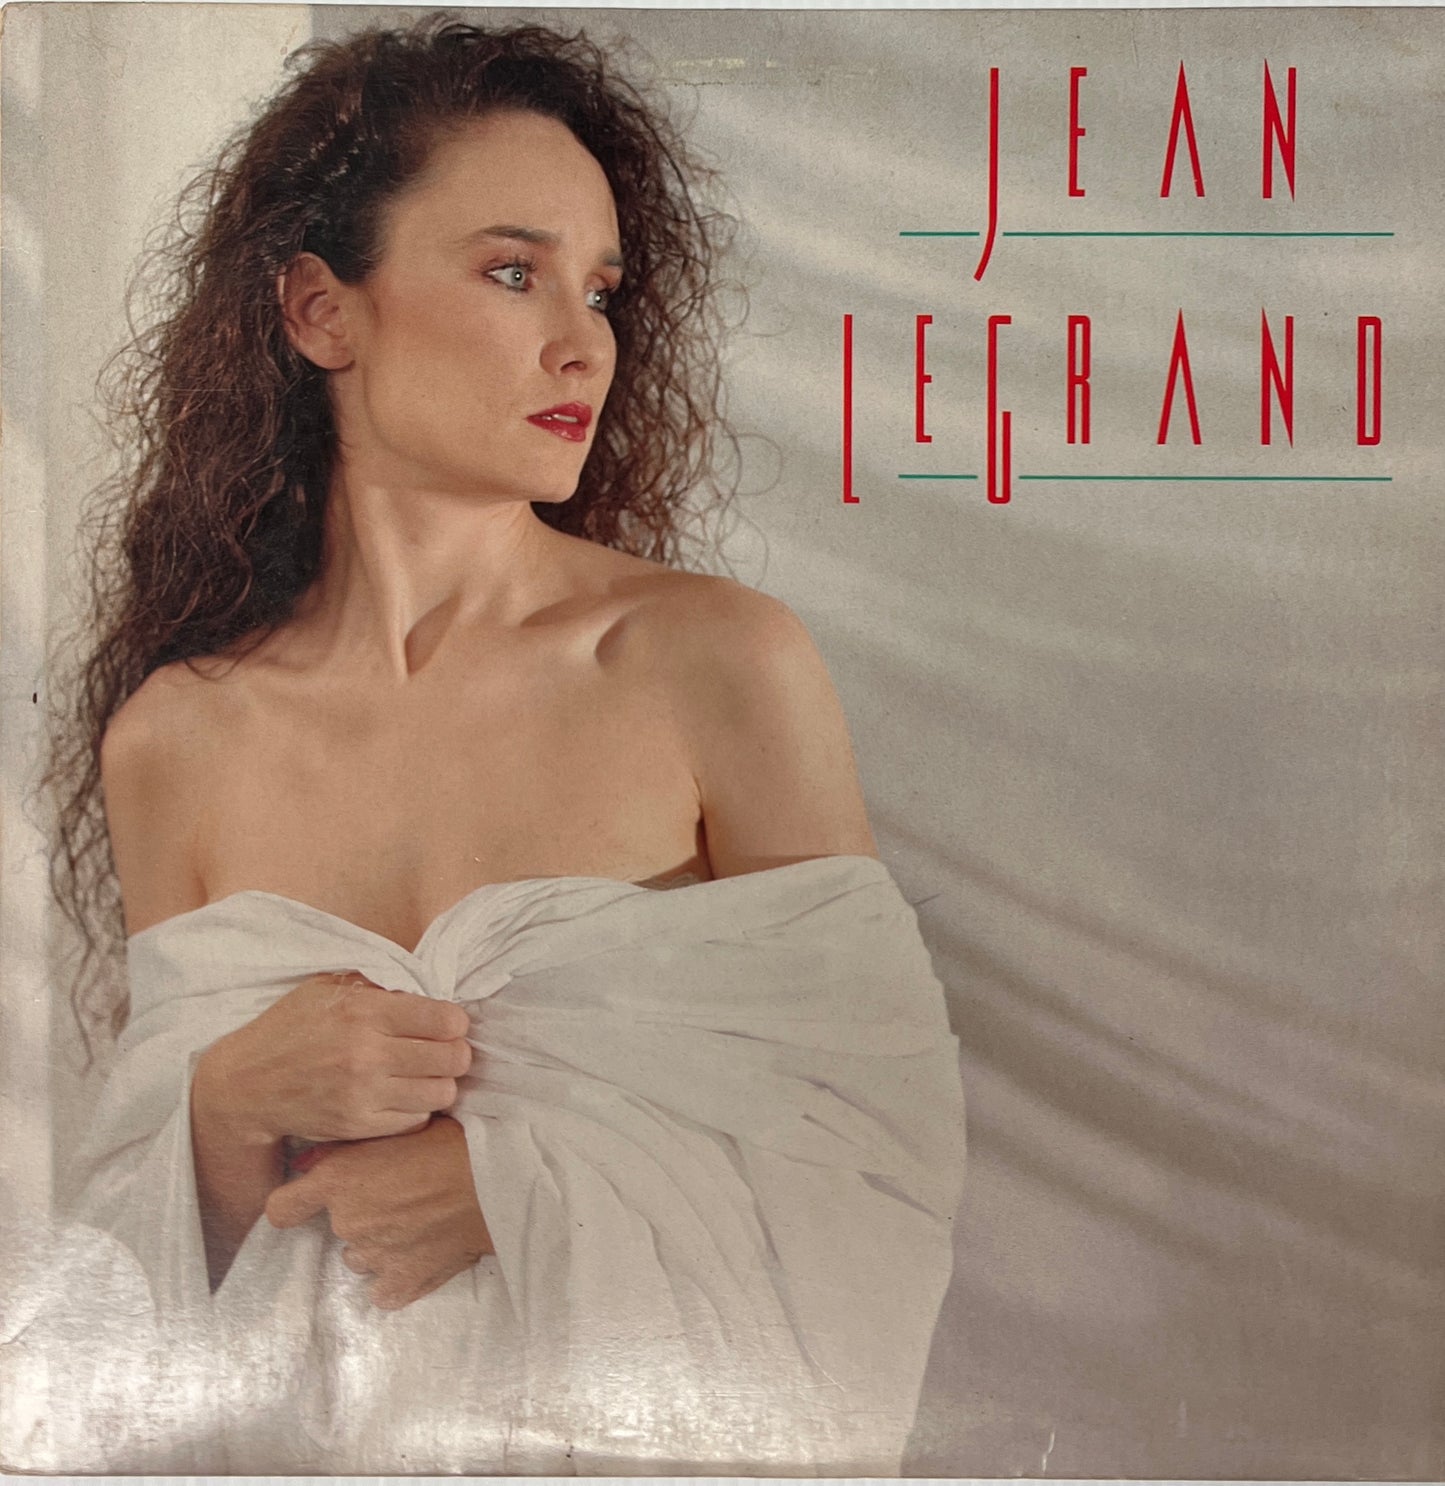 Jean Le Grand - Acariciame (Open Vinyl)